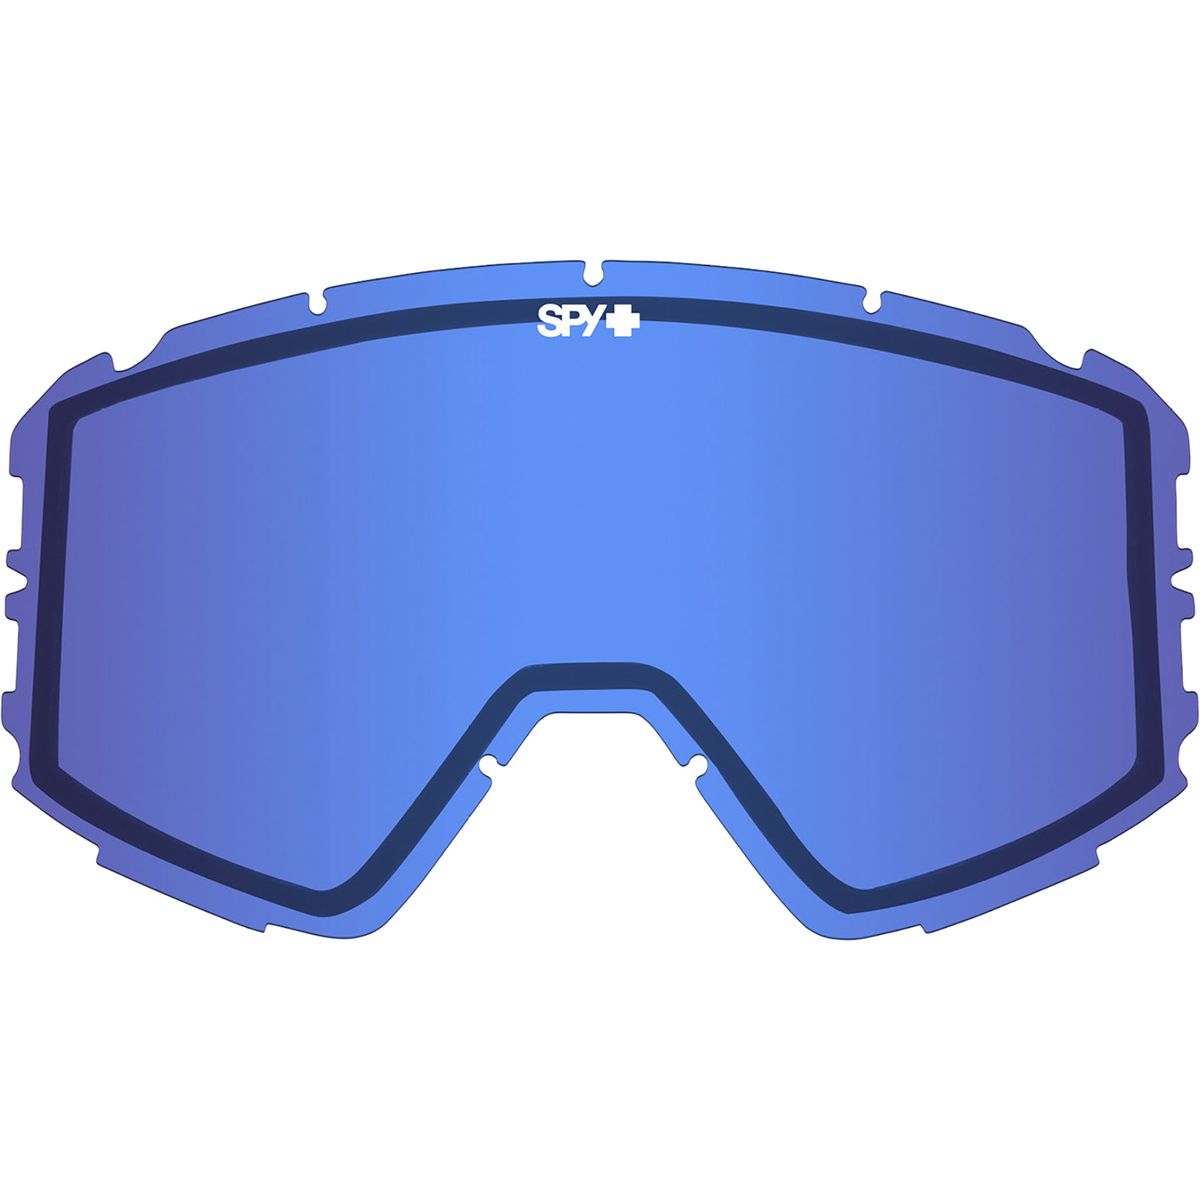 Spy Raider Goggles - Ski